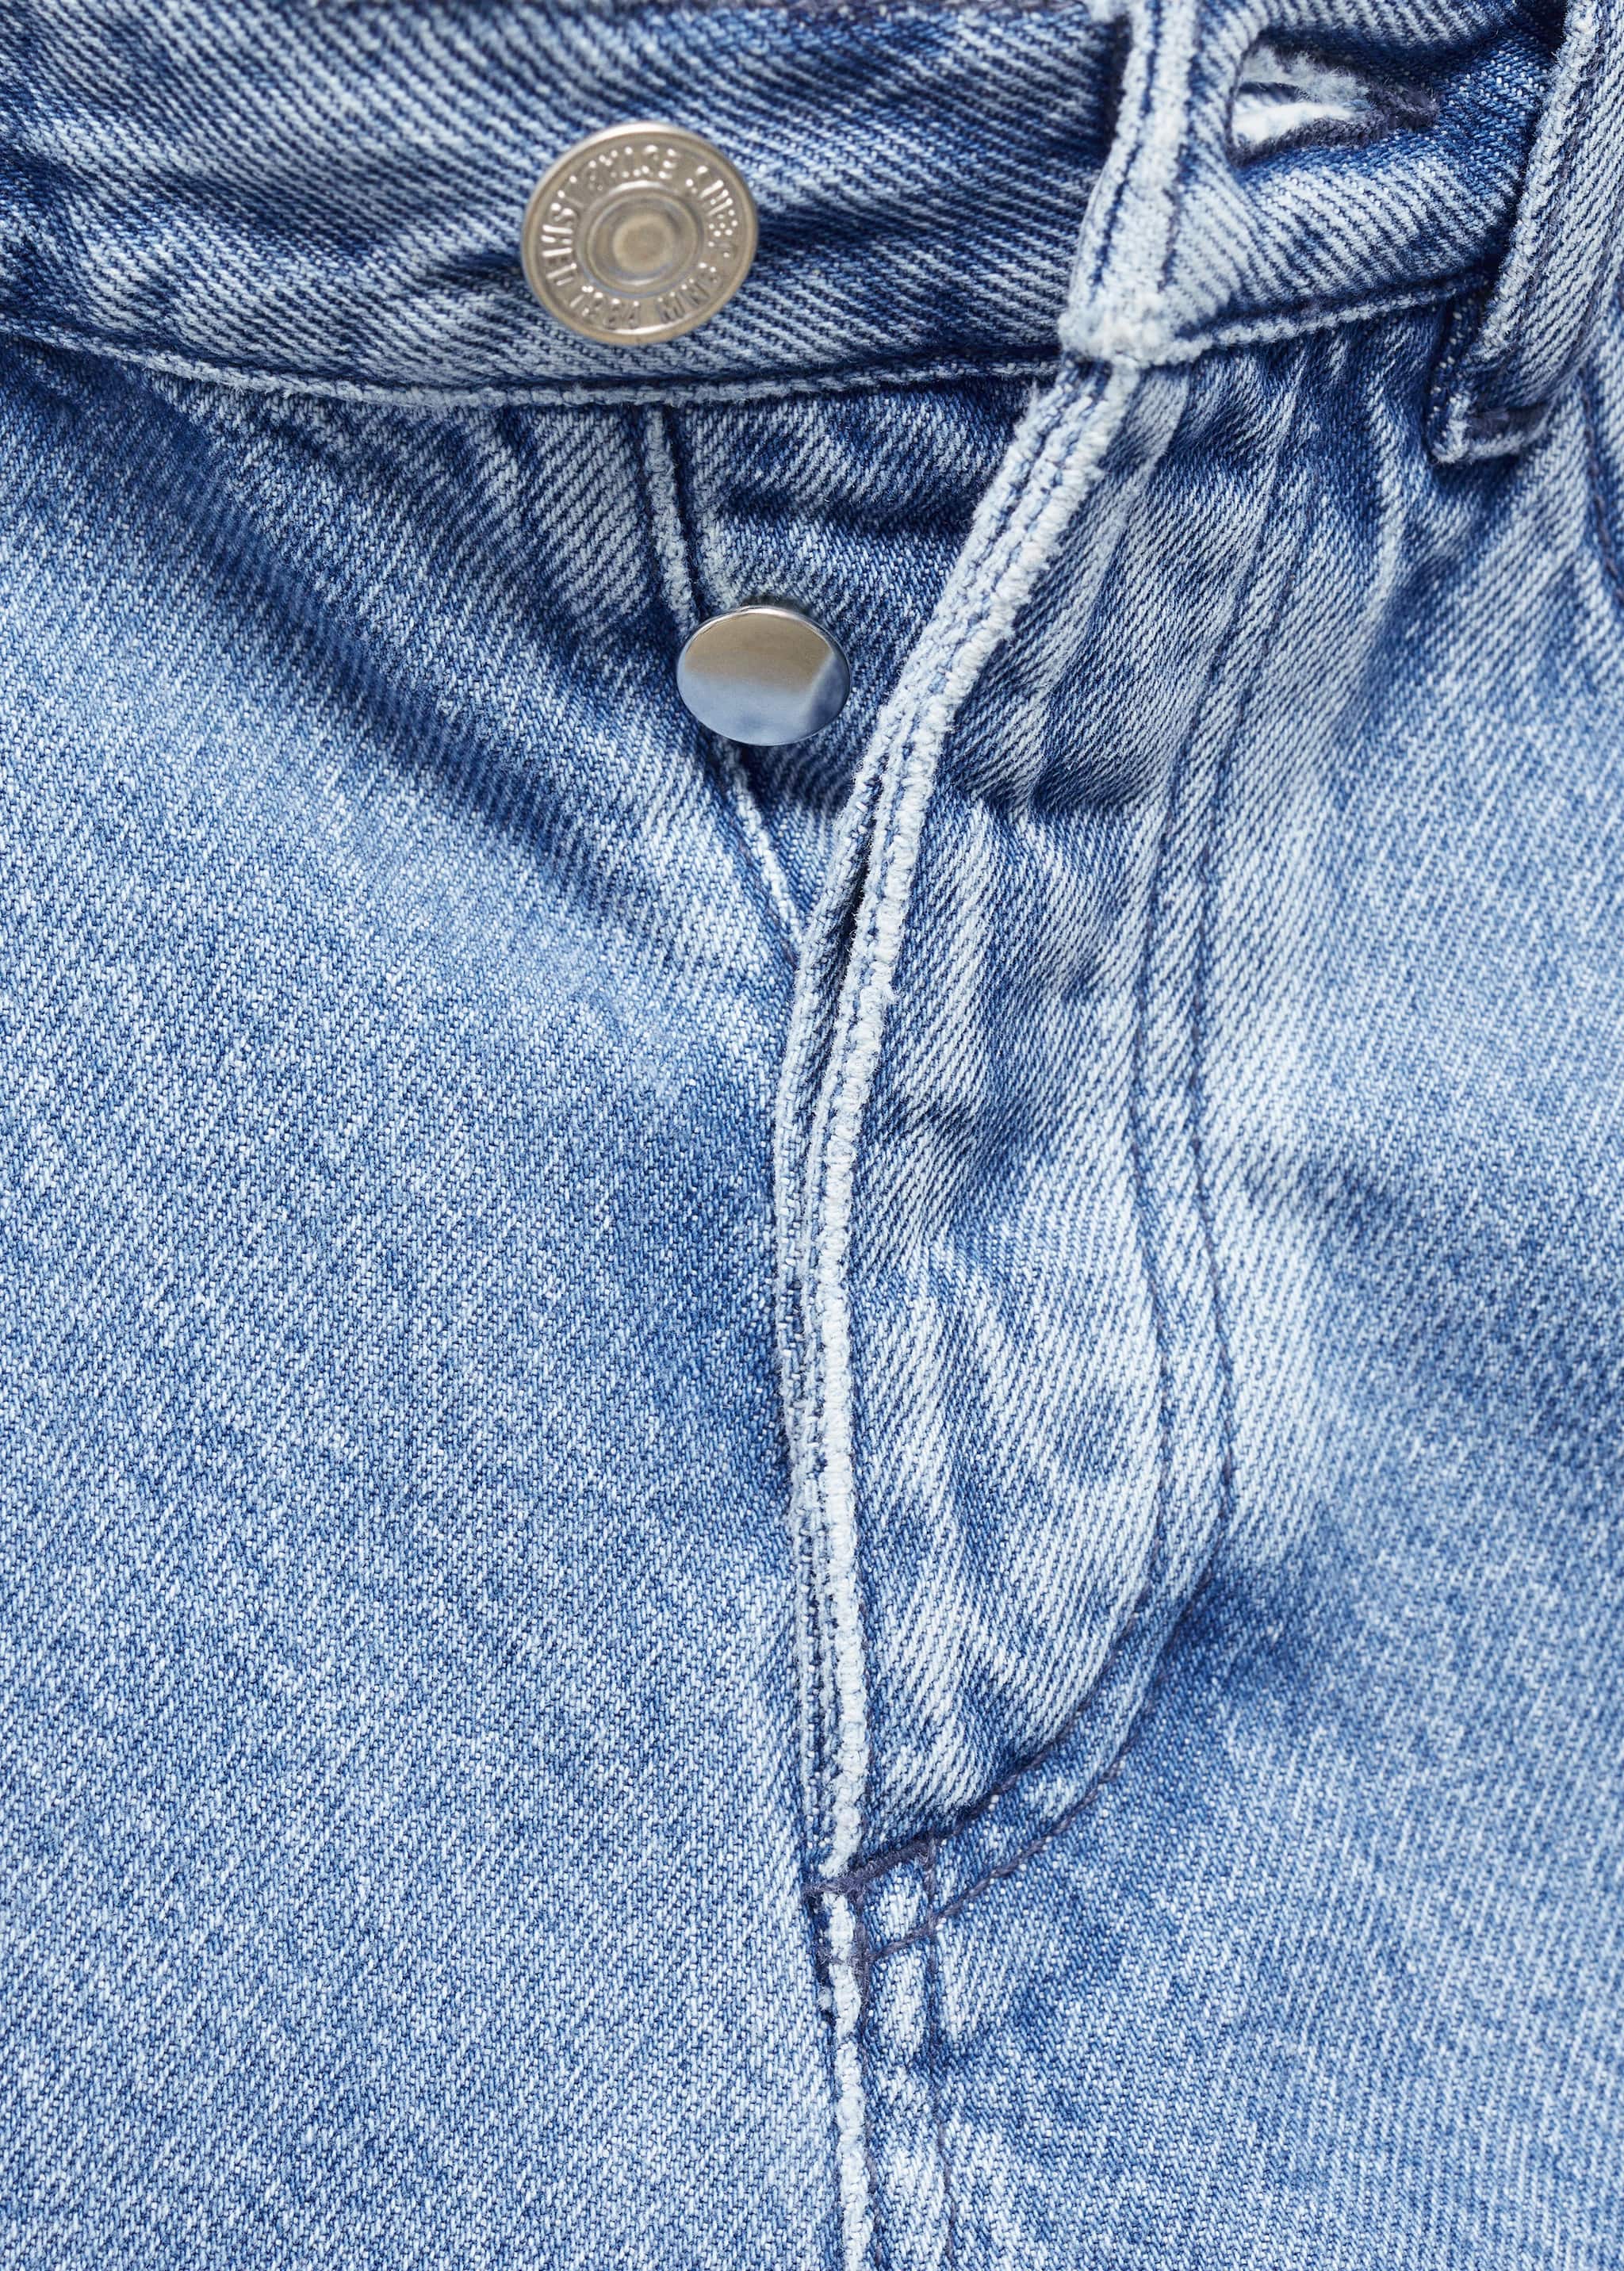 شورت جينز متوسط الارتفاع - تفاصيل المنتج 8